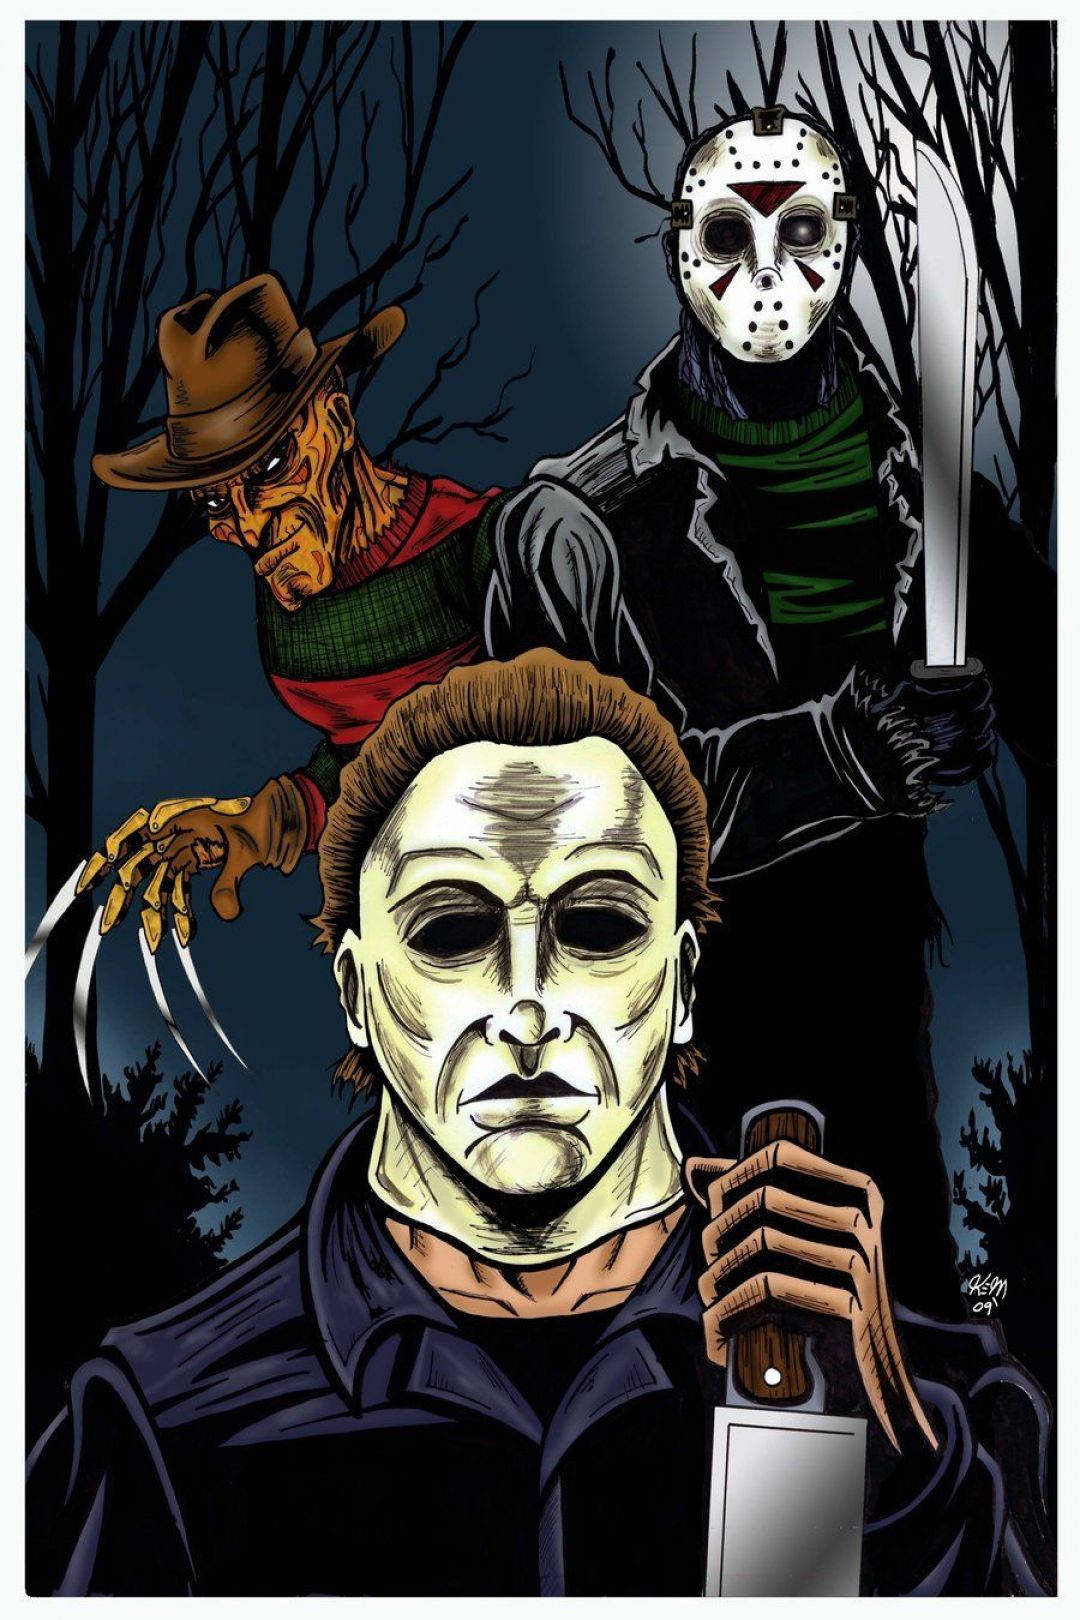 Vis din yndlings horrorfilm med Michael Myers iPhone tapeter. Wallpaper